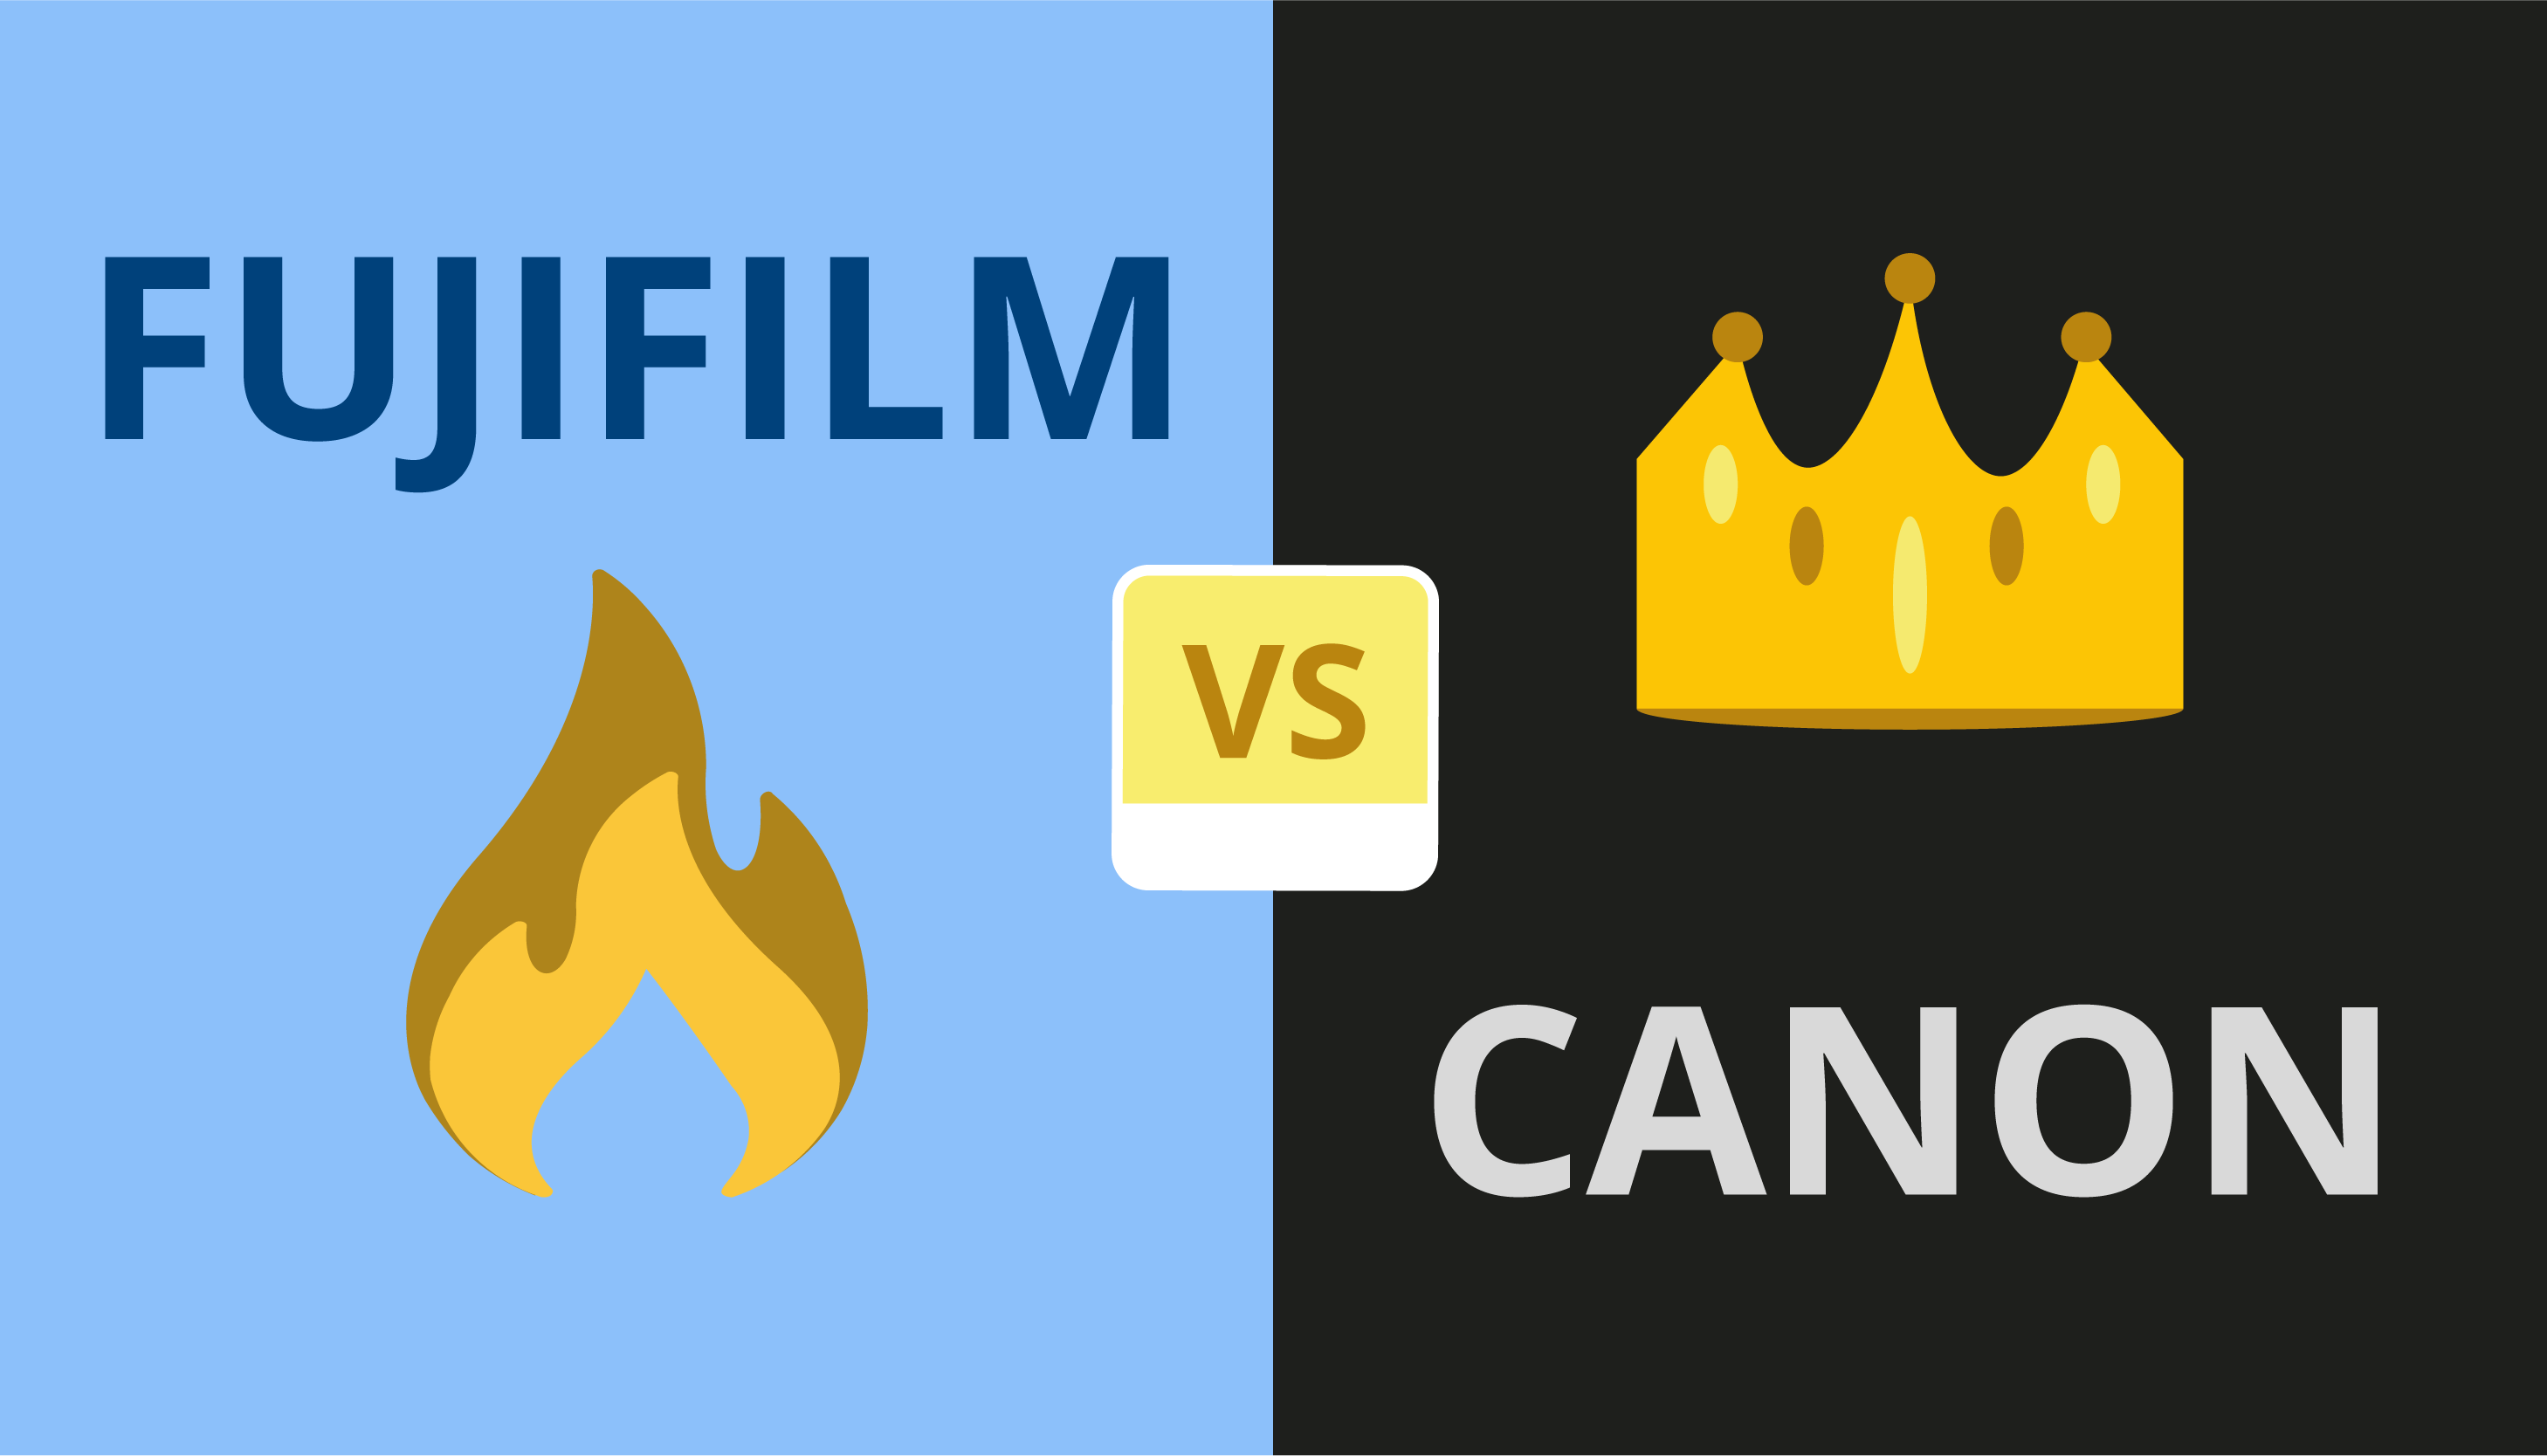 Fujifilm vs Canon